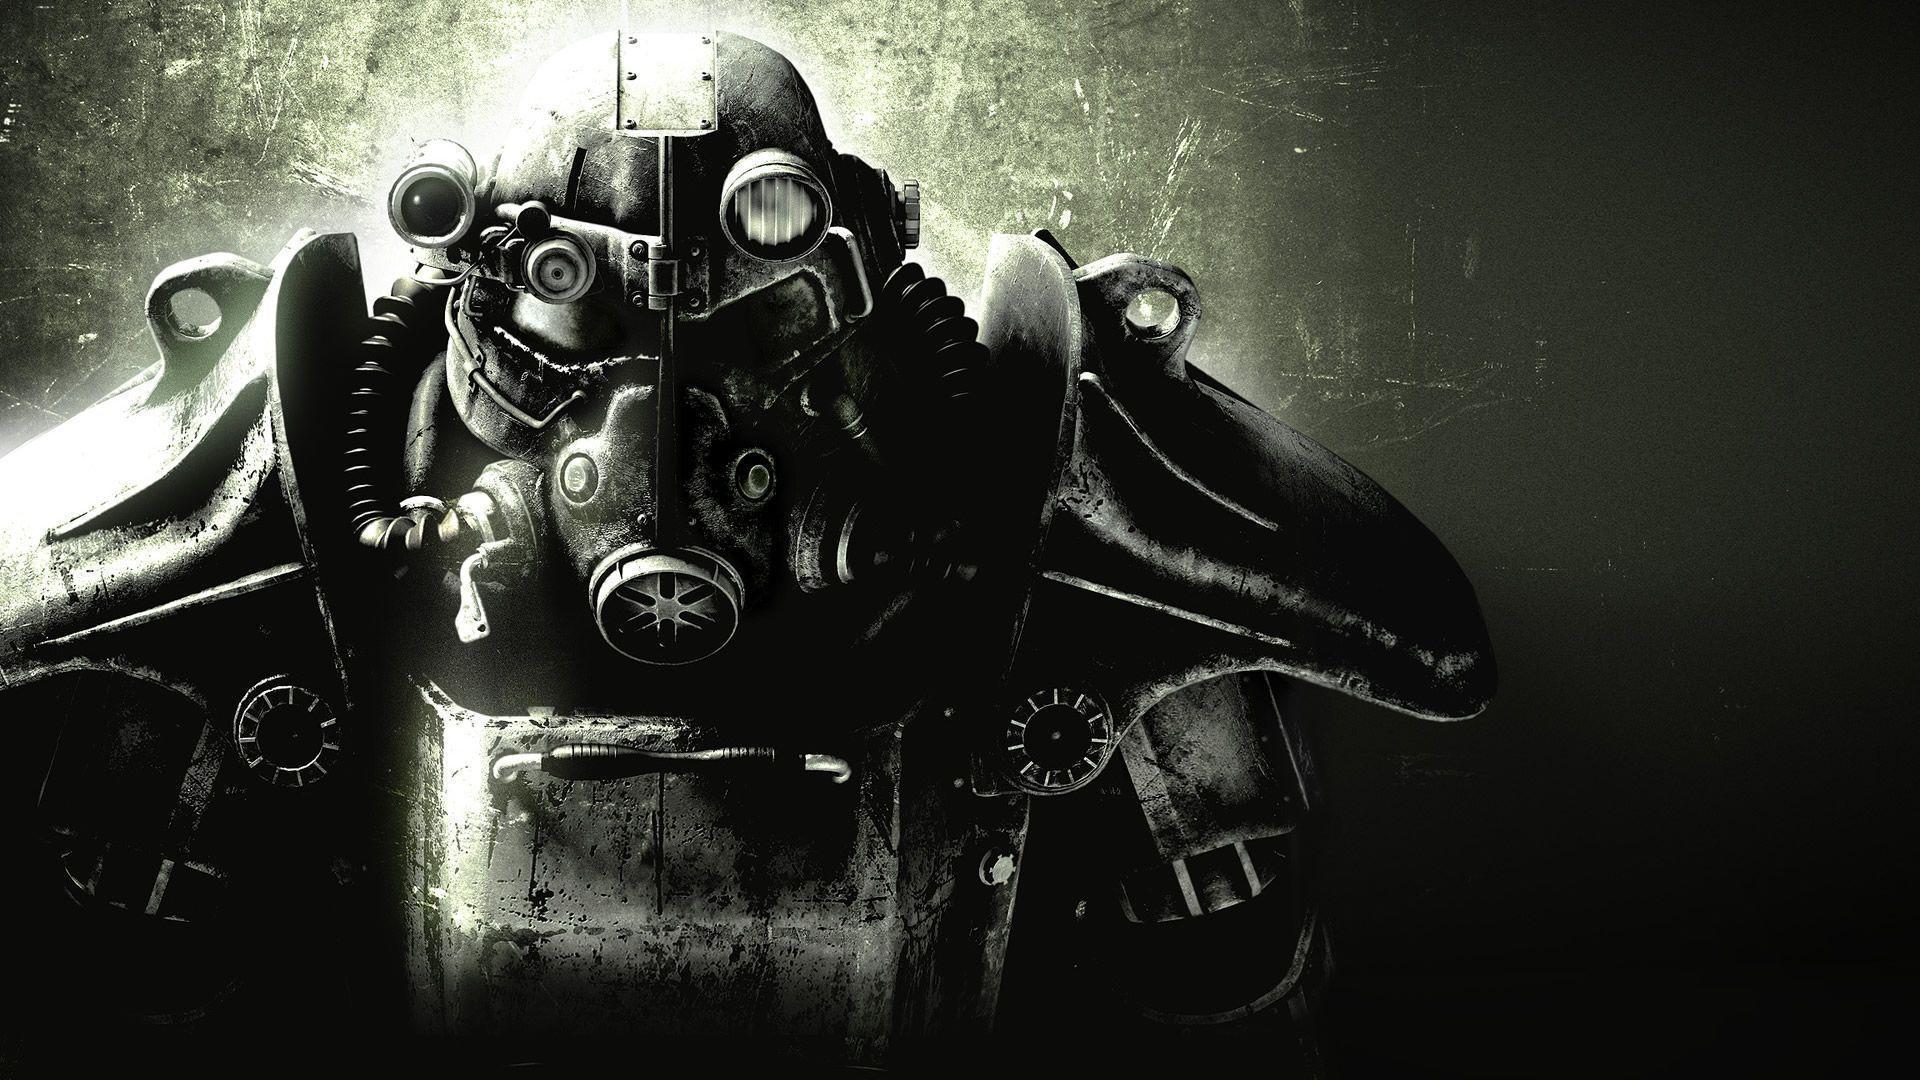 Bethesda planeja lançar Fallout 3 remaster, Novo DOOM, Dishonored 3 e mais